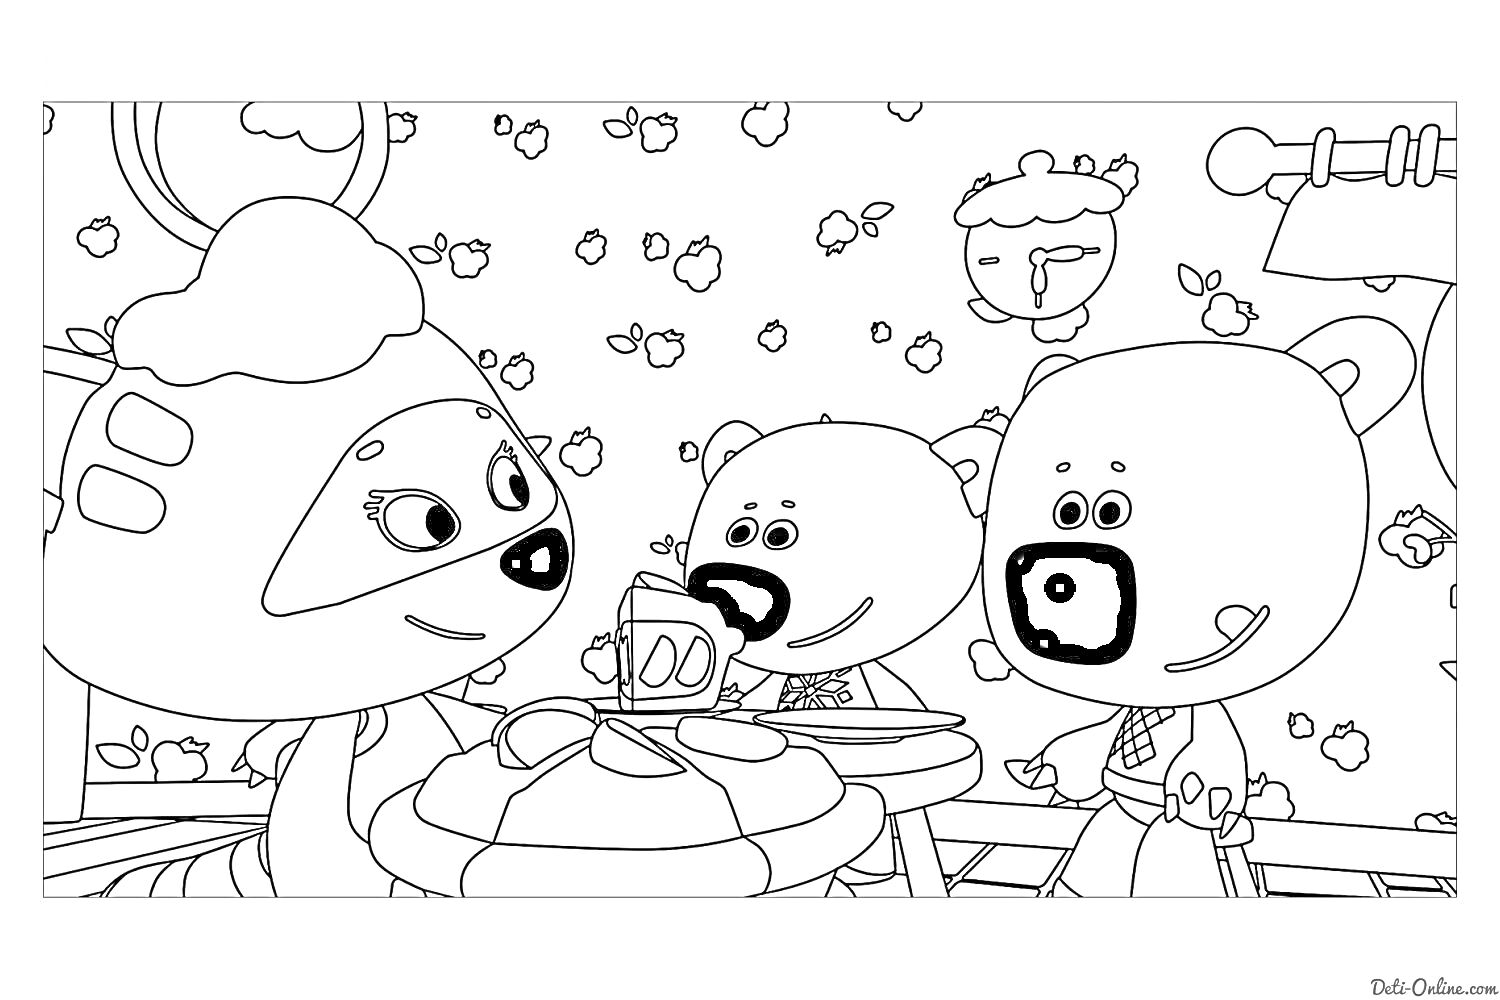 Три мишки (два белых медведя и одна медведица) в кафе, украшенном обоями с яблоками, большая муха, форма каштана на стене